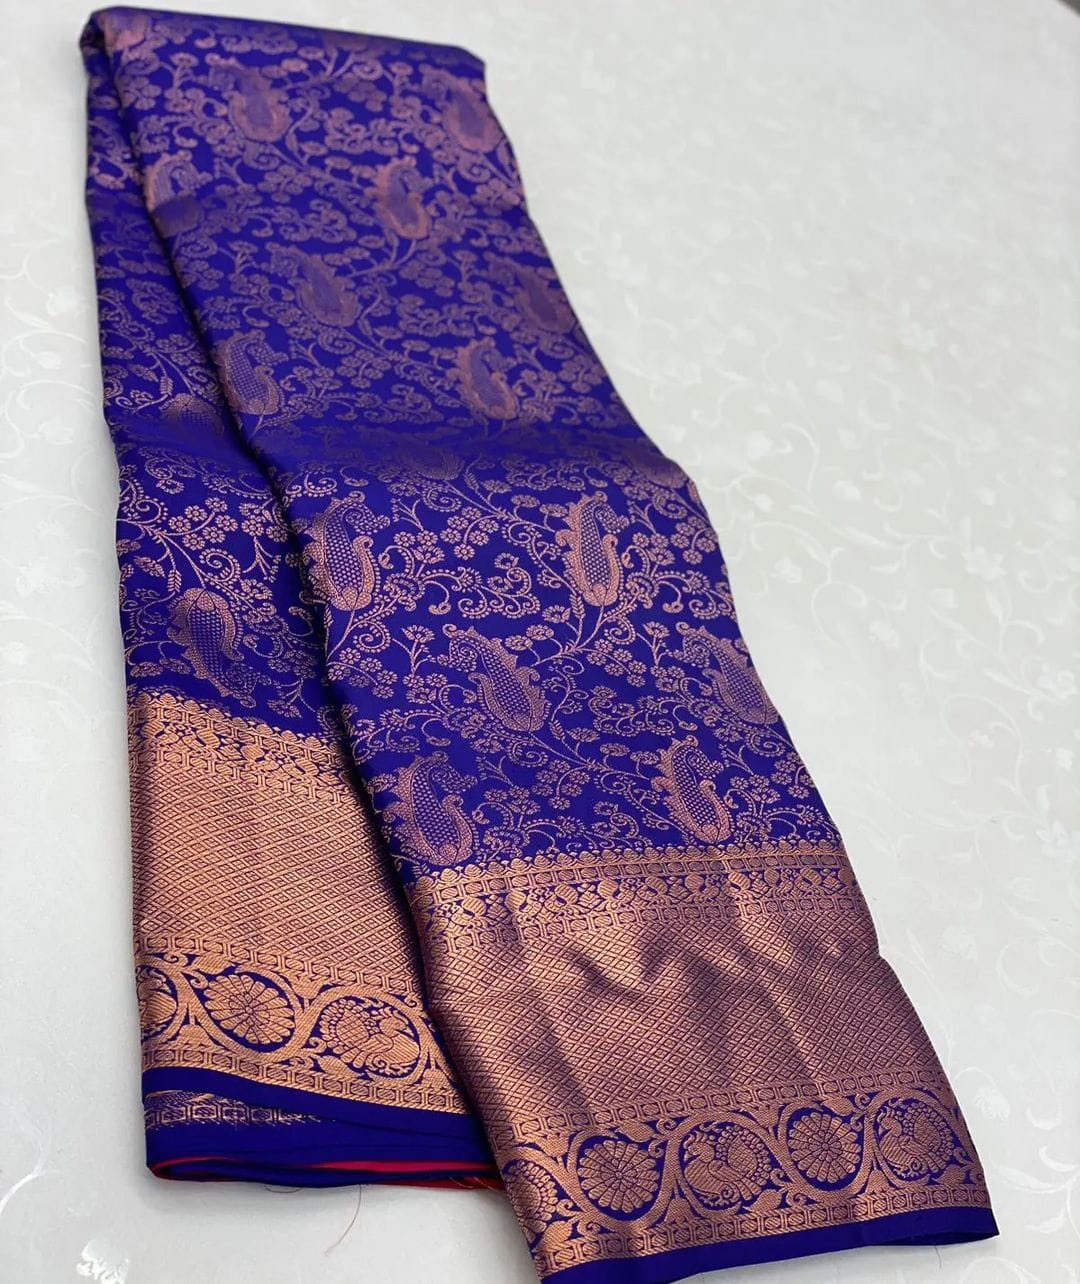 Tempting Blue Soft Silk Saree With Supernal Blouse Piece - Colorful Saree